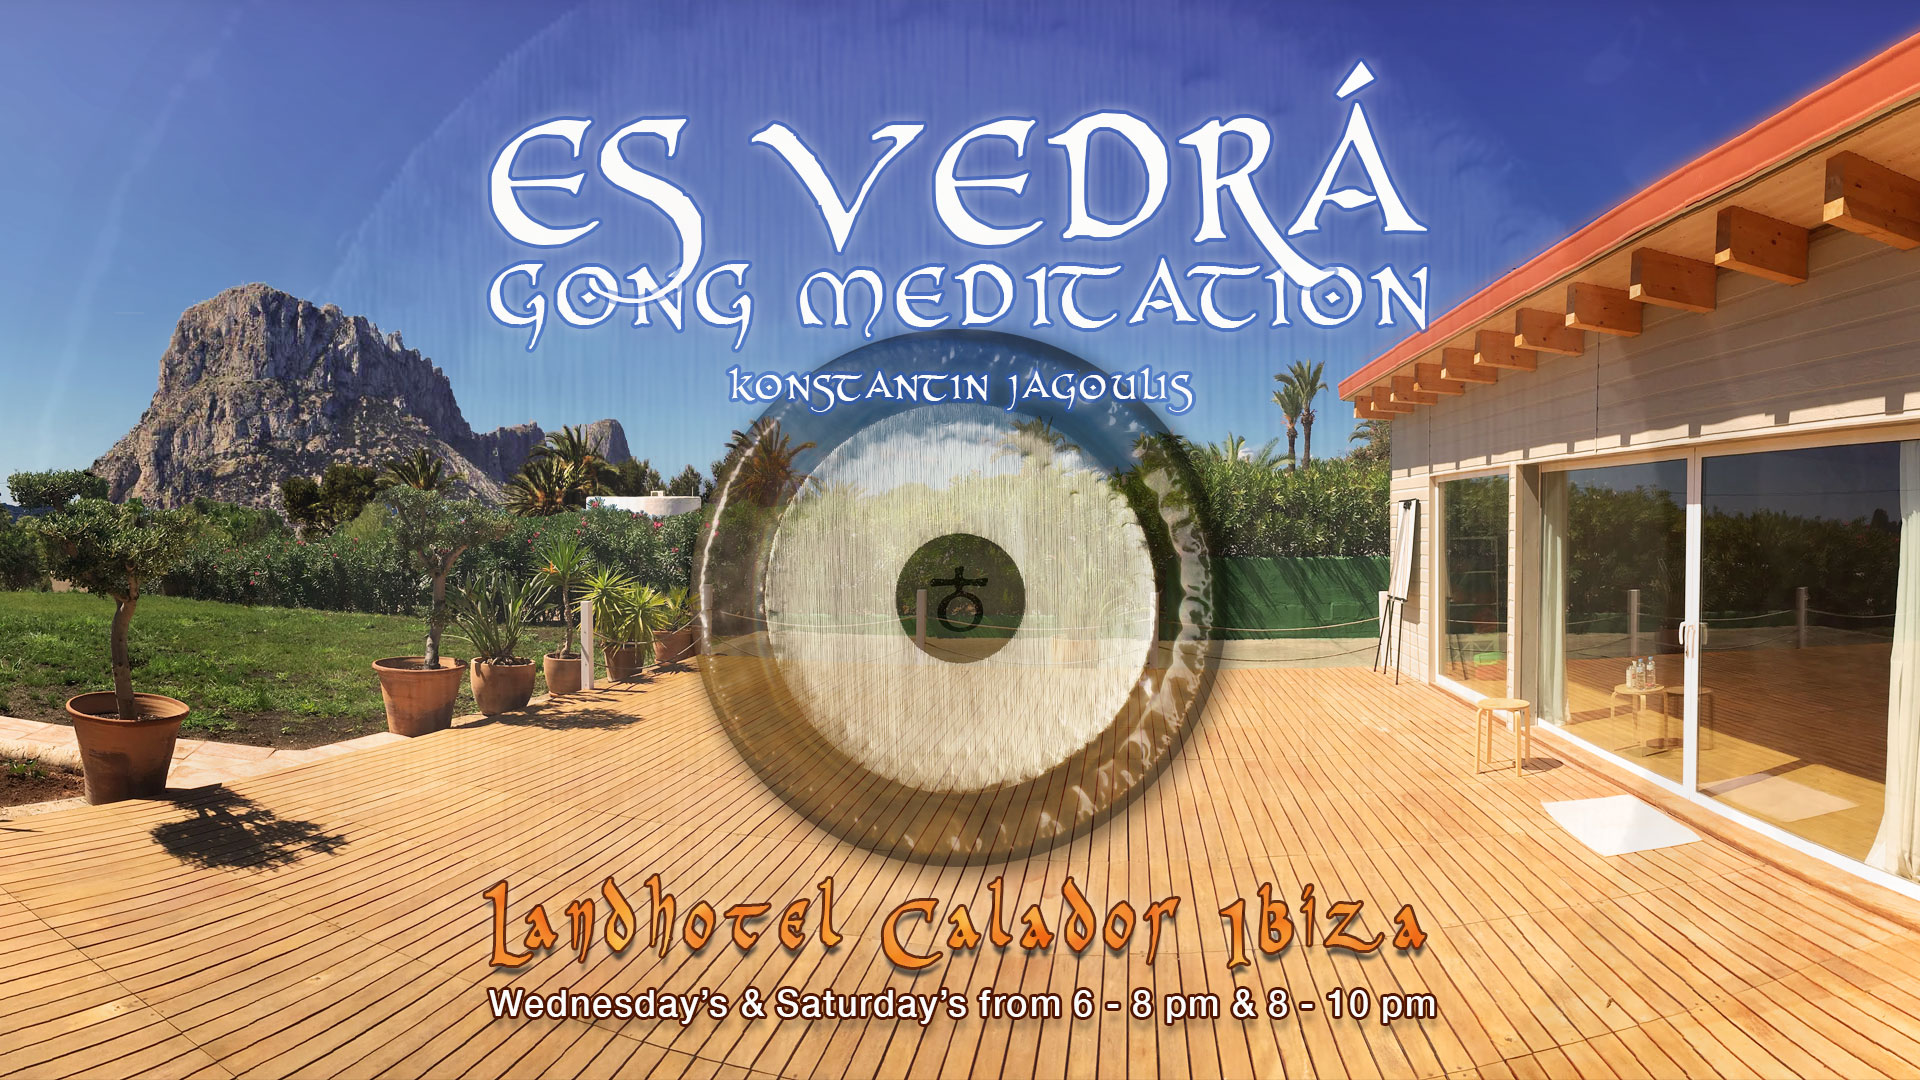 Es Vedrá Gong Meditation at Landhotel Calador Ibiza